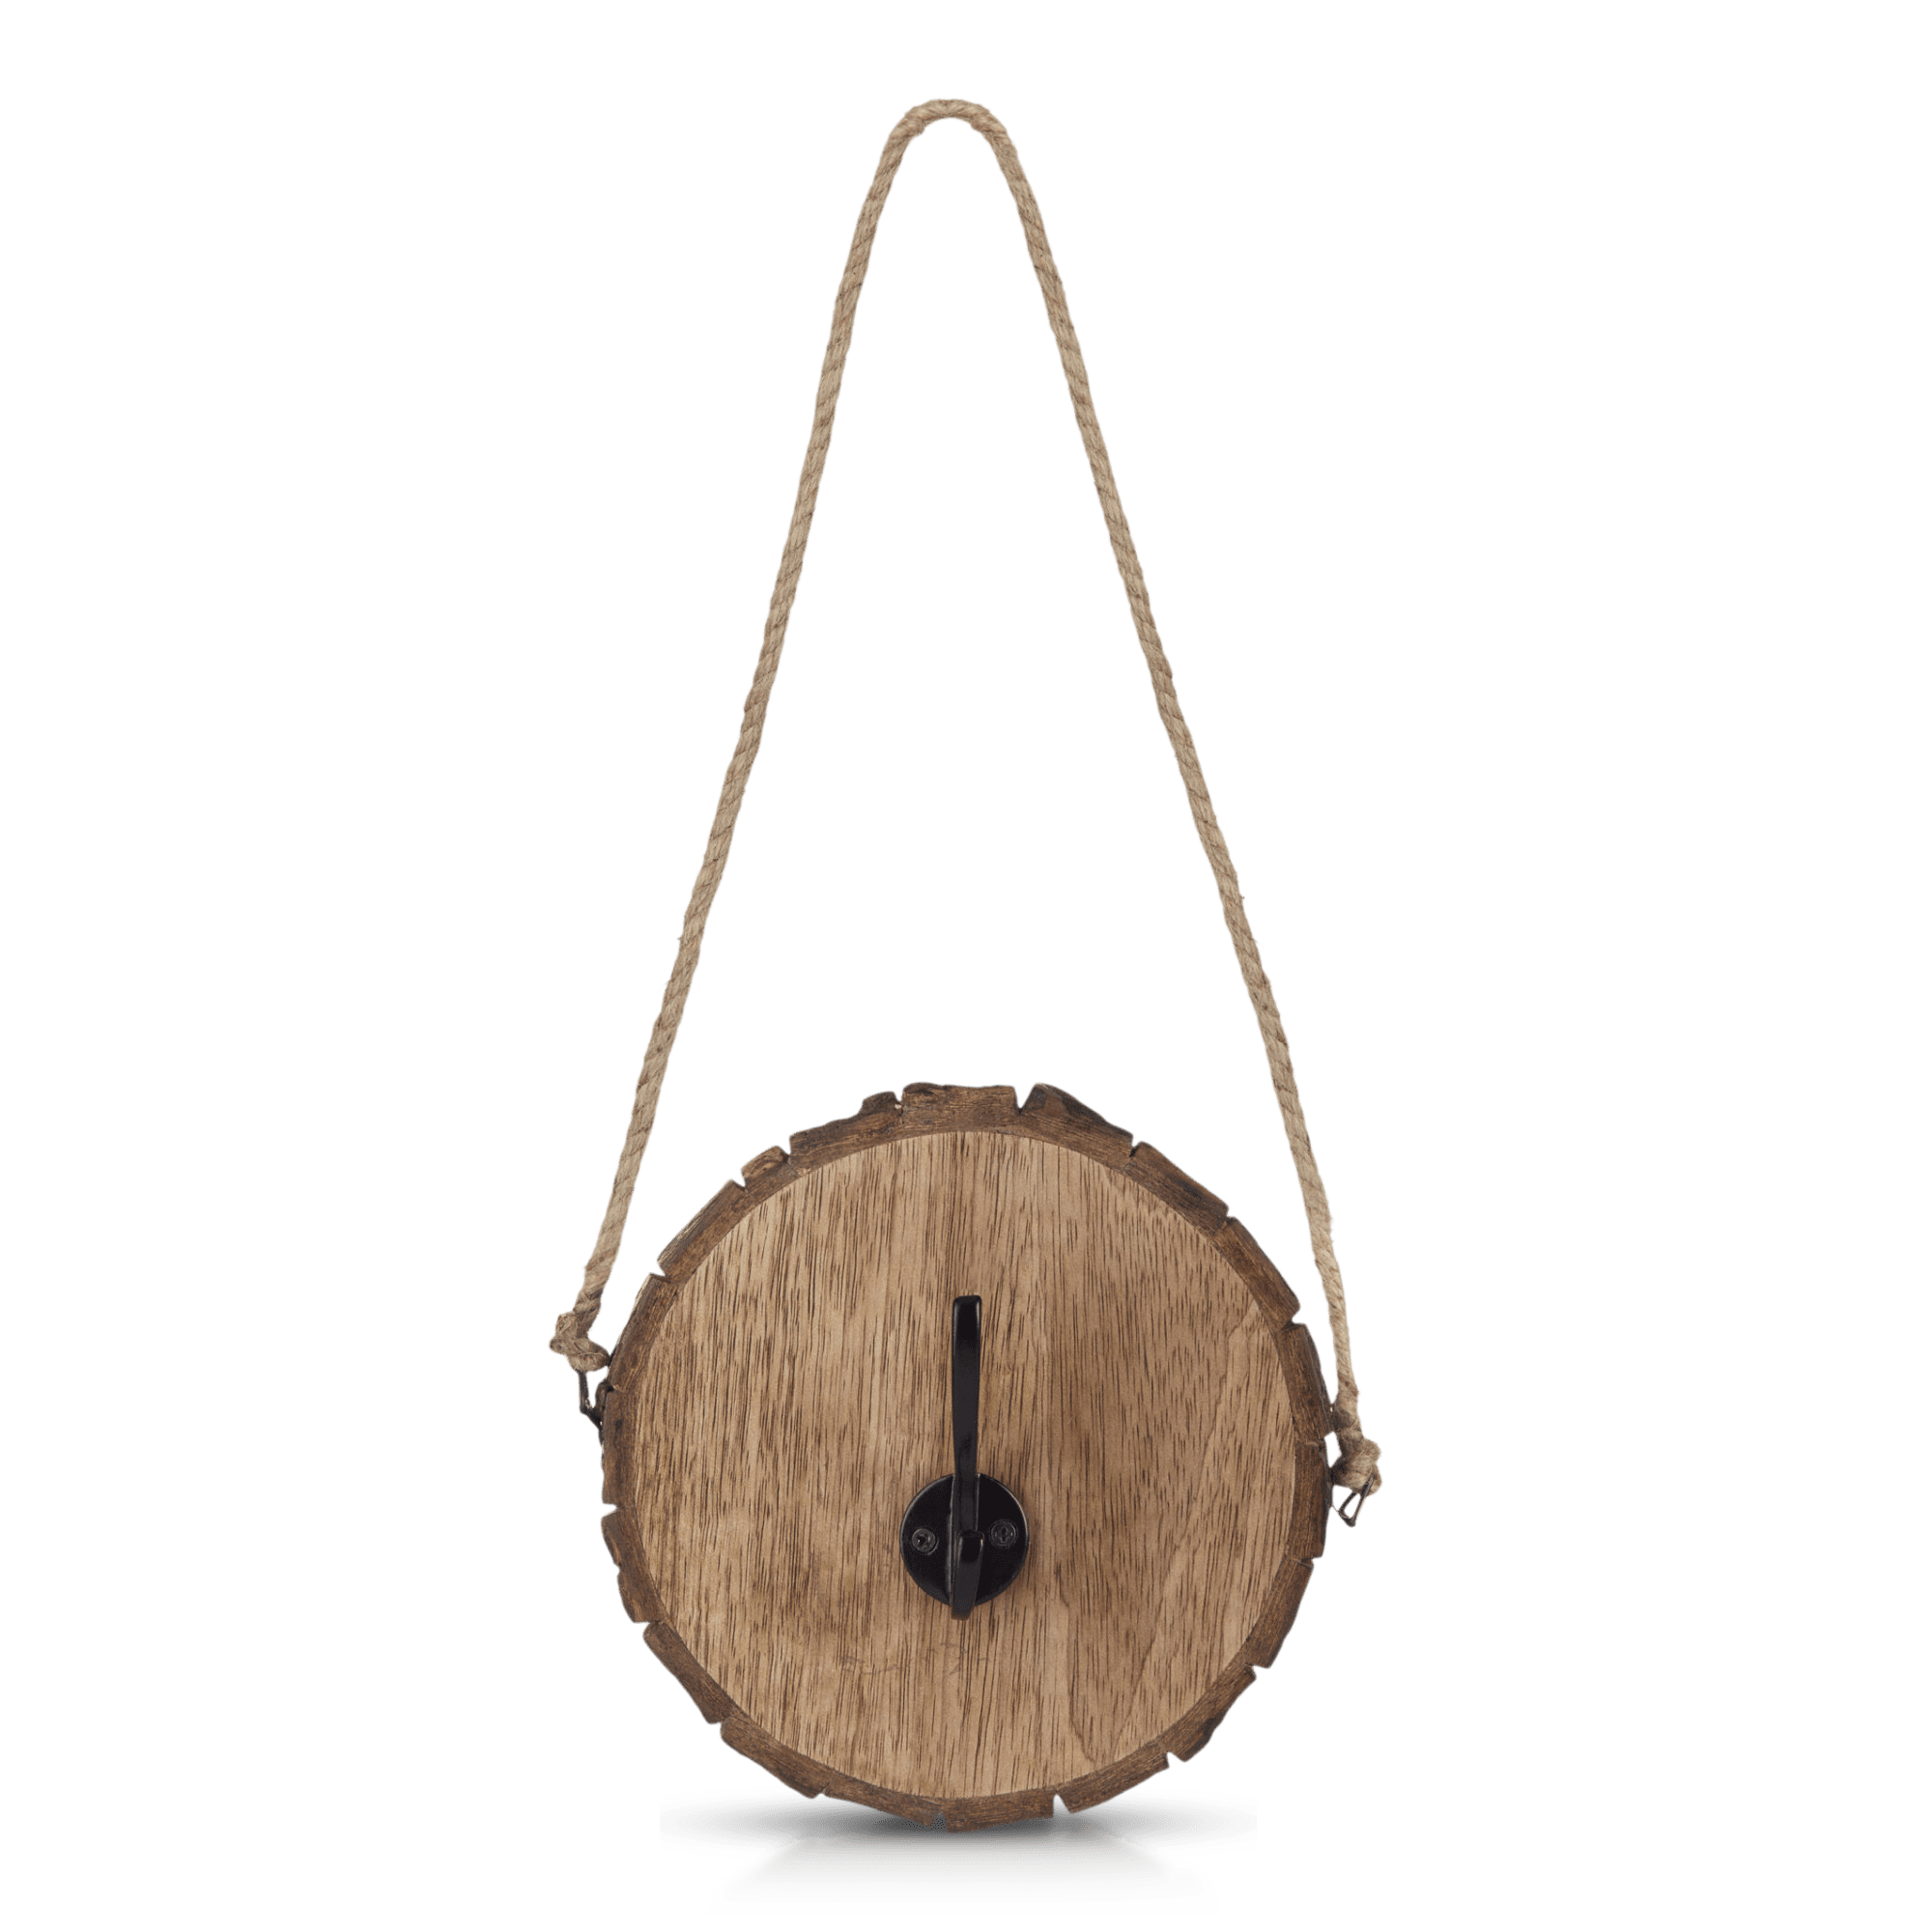 Crochet sur rondin de bois avec corde